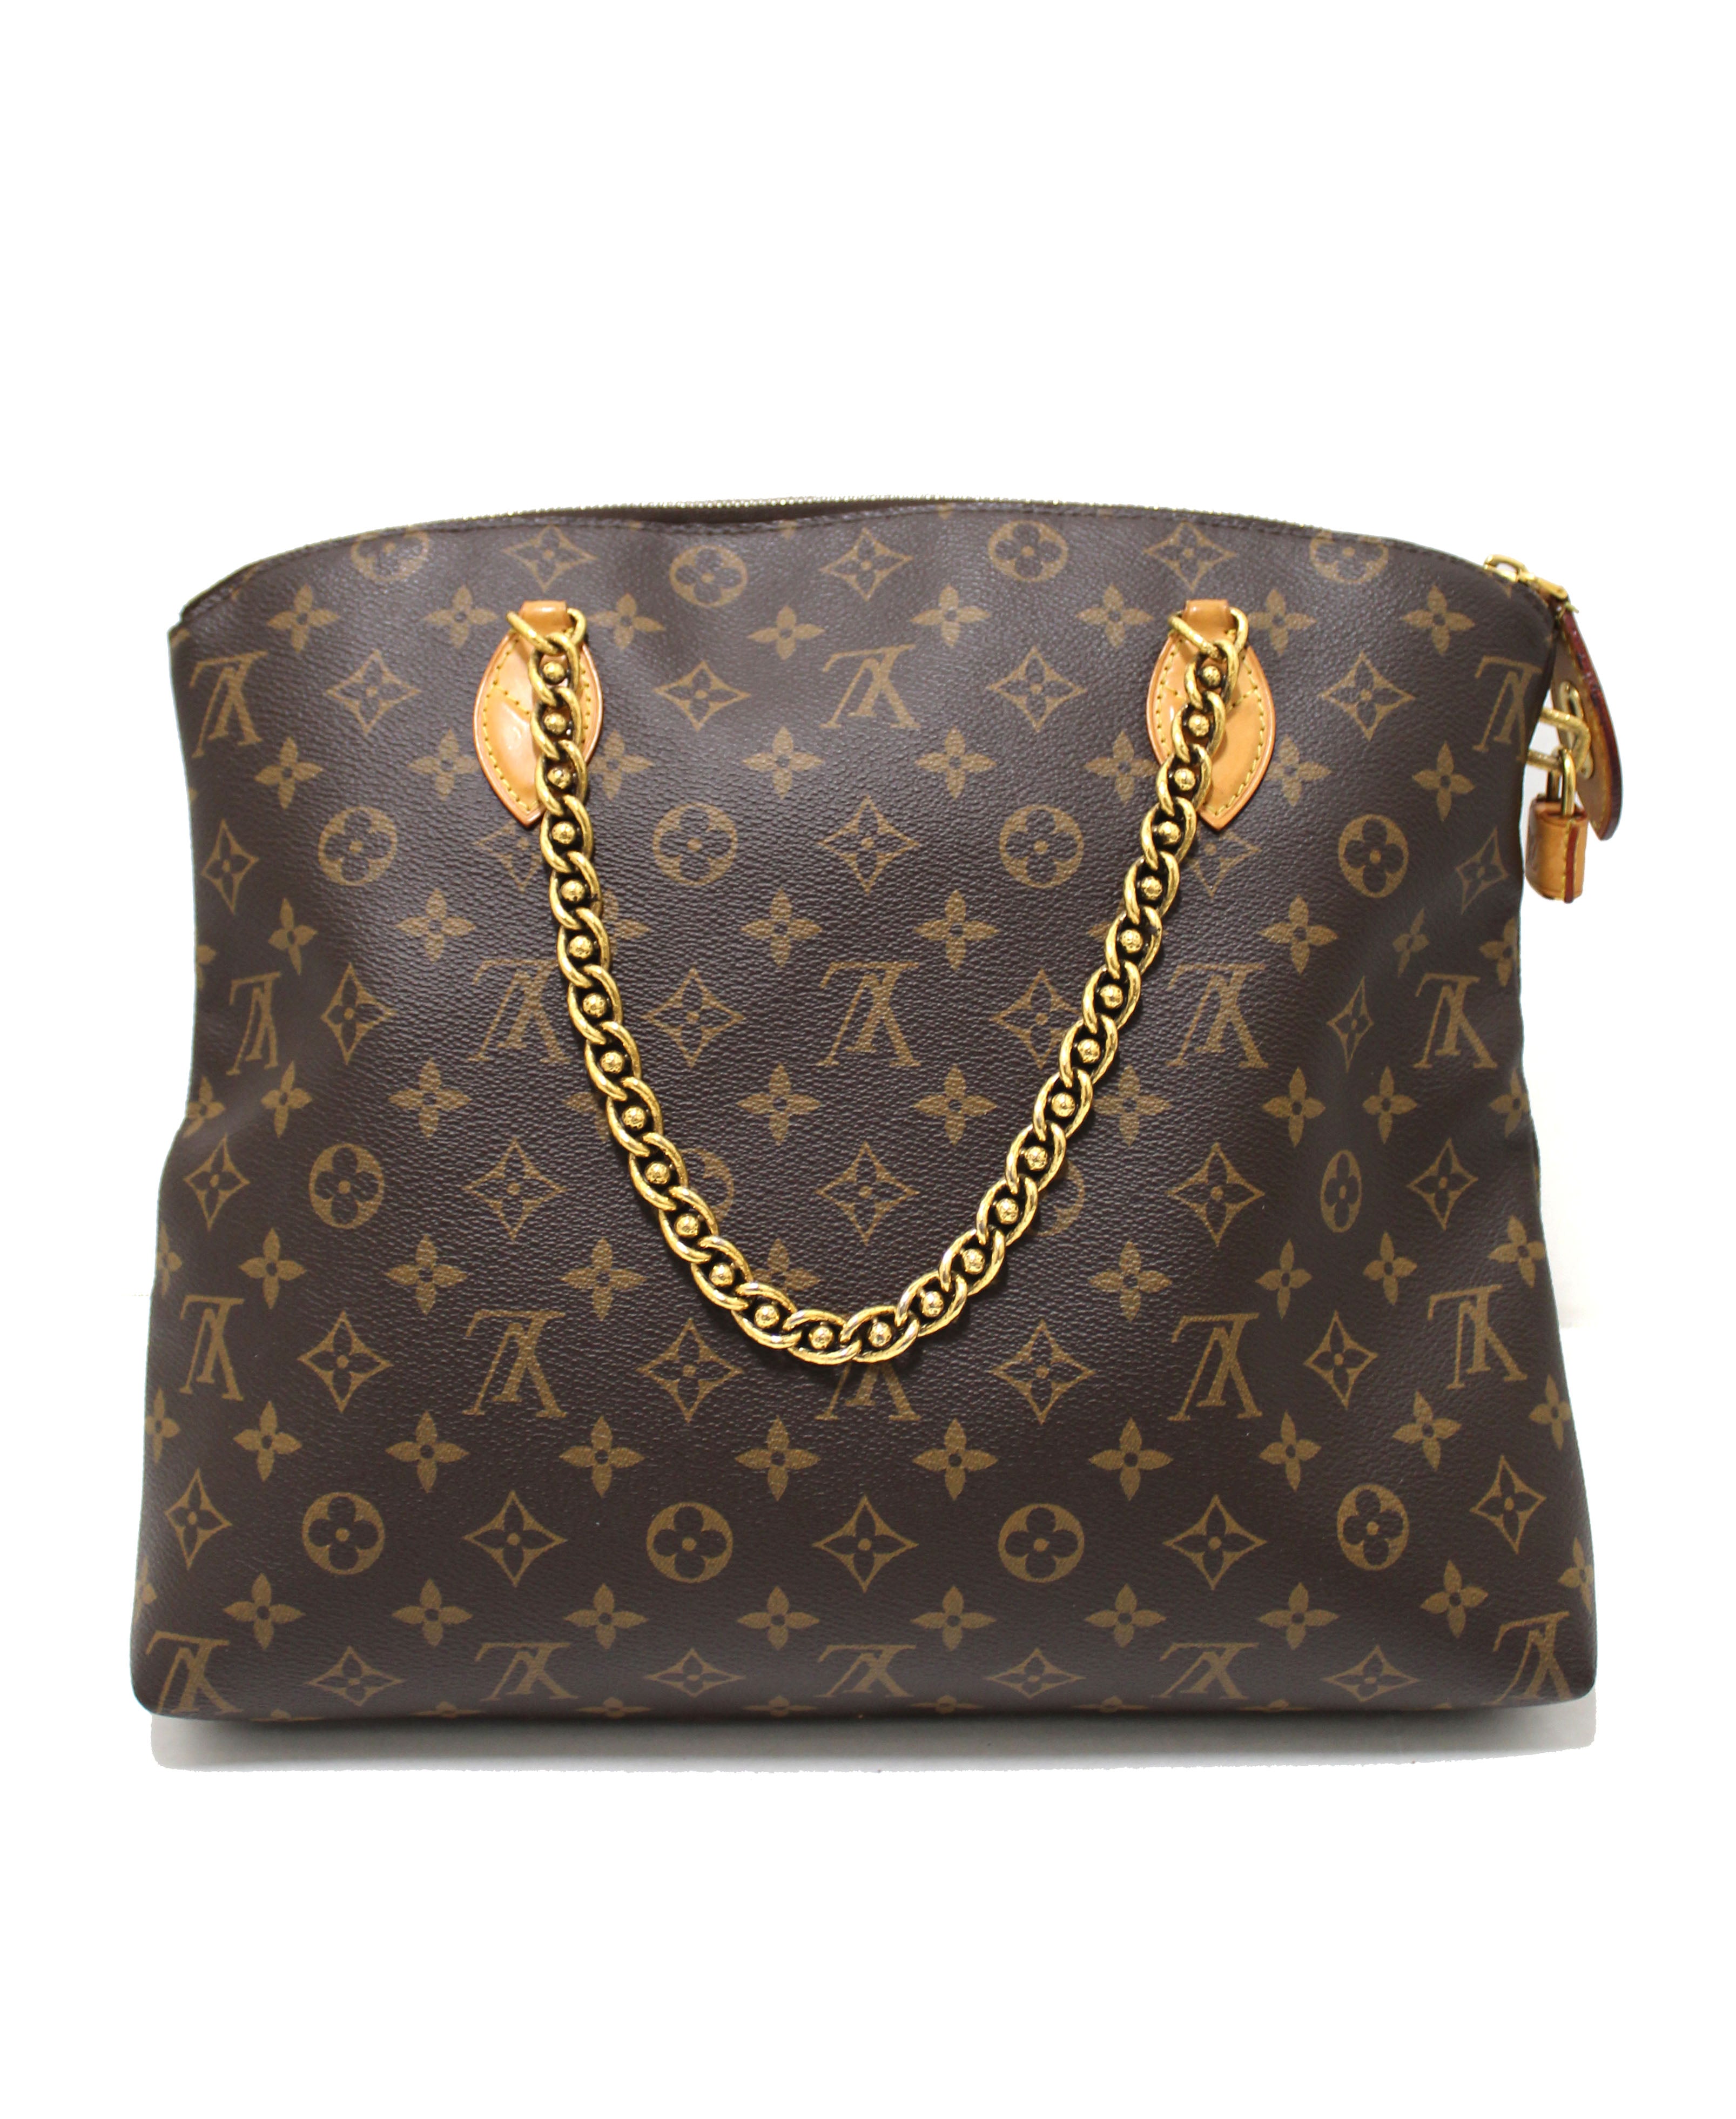 Authentic Louis Vuitton Limited Edition Monogram Lockit Chain Tote Bag –  Paris Station Shop